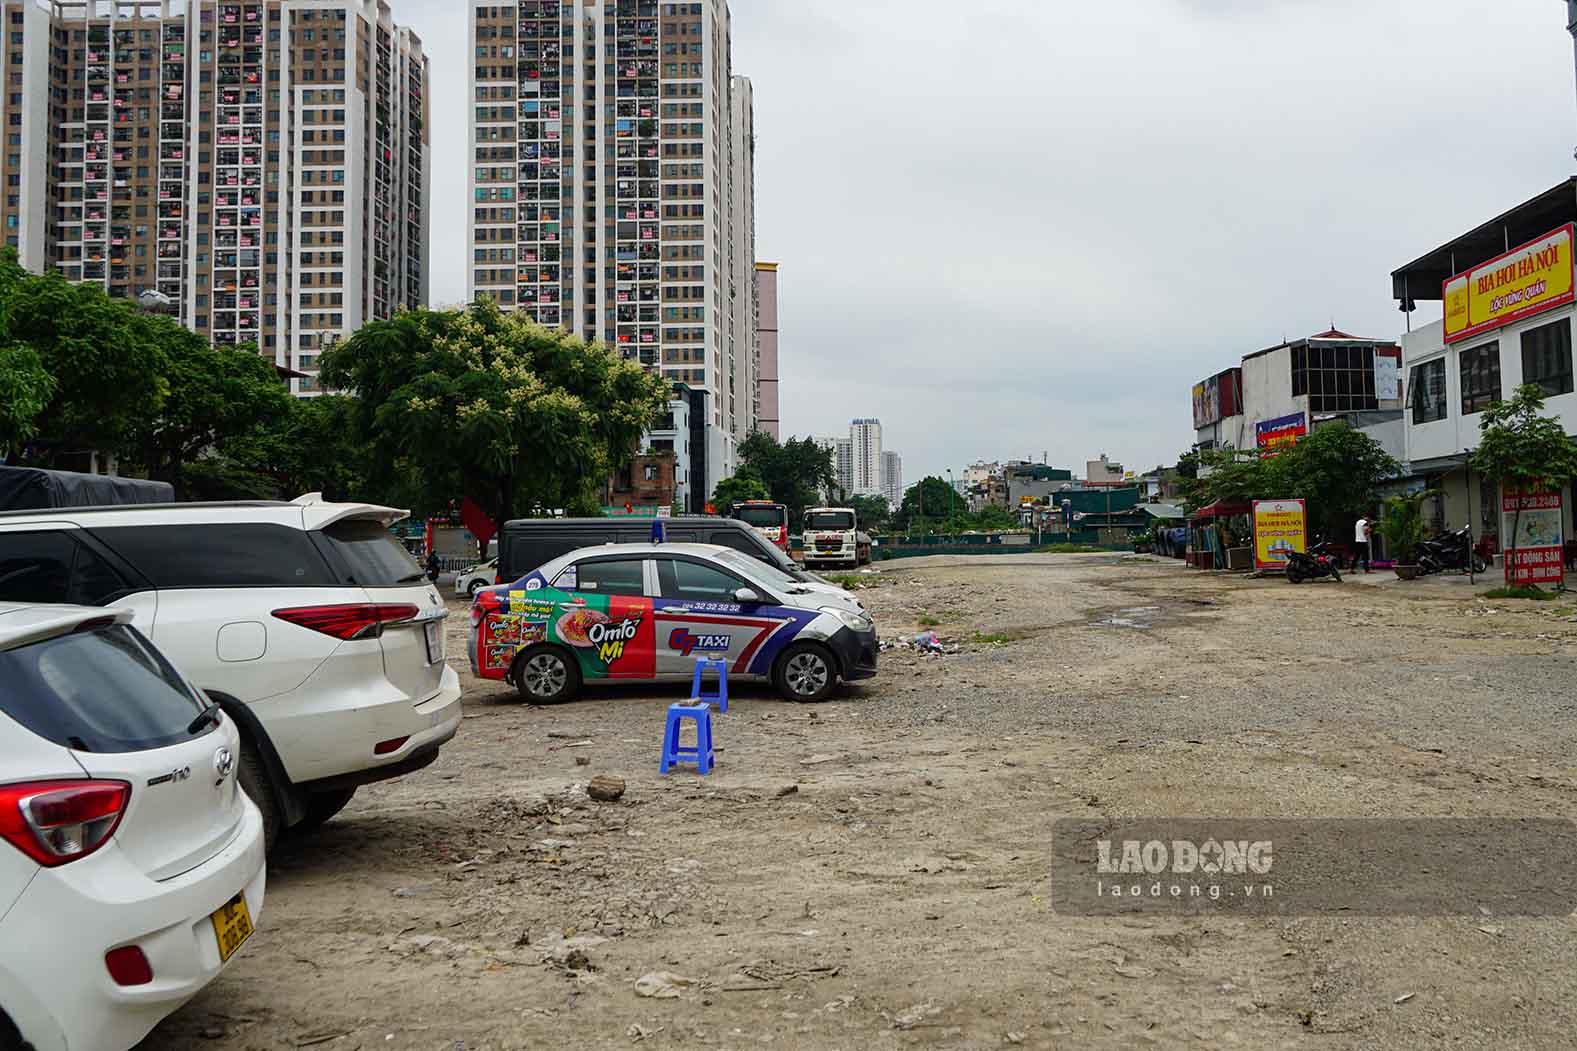 Sau nhiều năm trì trệ, cuối tháng 2 vừa qua, UBND quận Hoàng Mai cho biết đã bàn giao 100% mặt bằng sạch cho chủ đầu tư để phục vụ thi công dự án đường Vành đai 2,5 (đoạn Đầm Hồng - Quốc lộ 1).